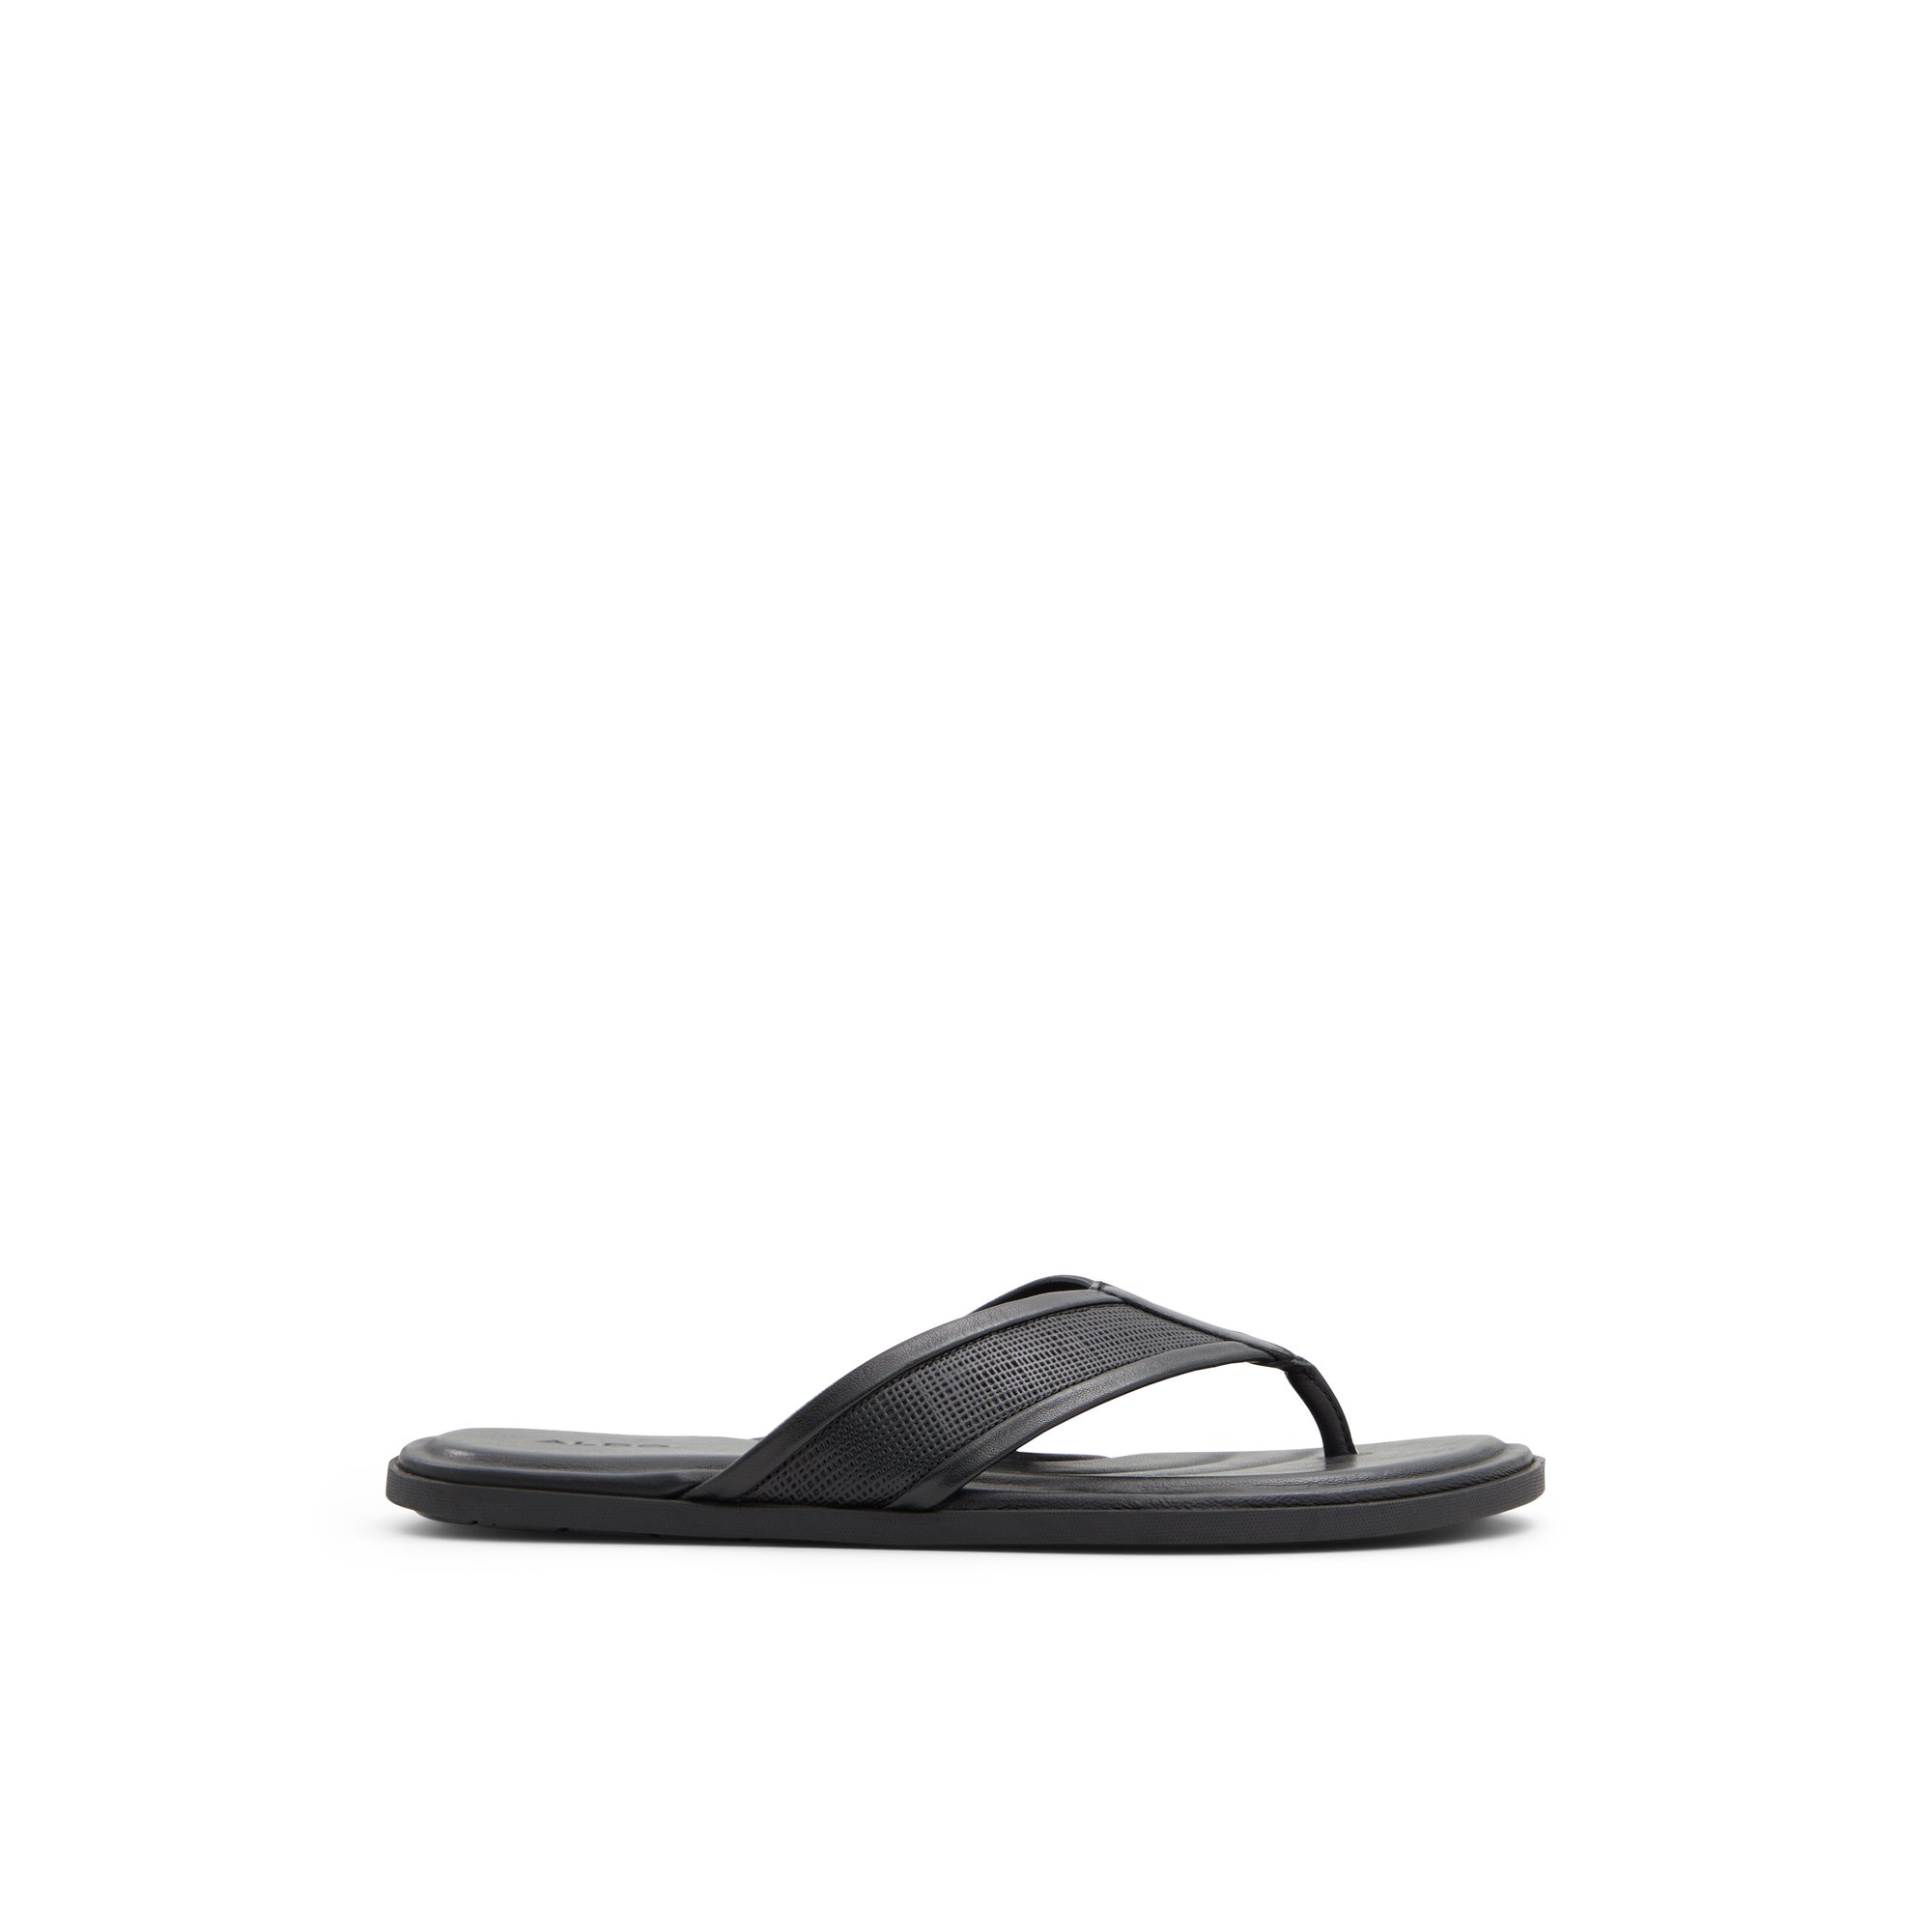 ALDO Jeric - Men's Flip Flop Sandals - Black